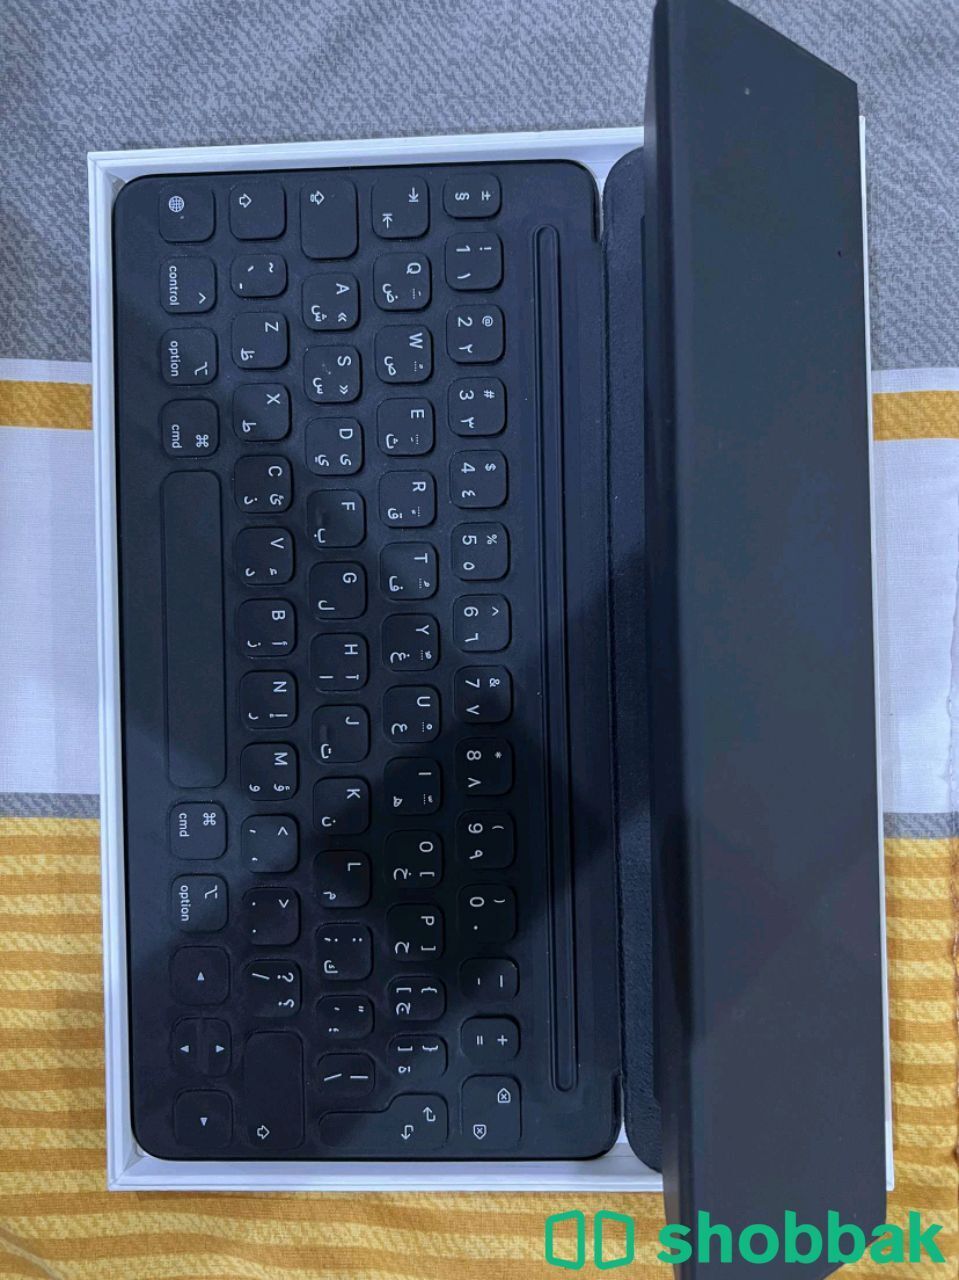 لوحة مفاتيح ايباد  Smart keyboard  Shobbak Saudi Arabia